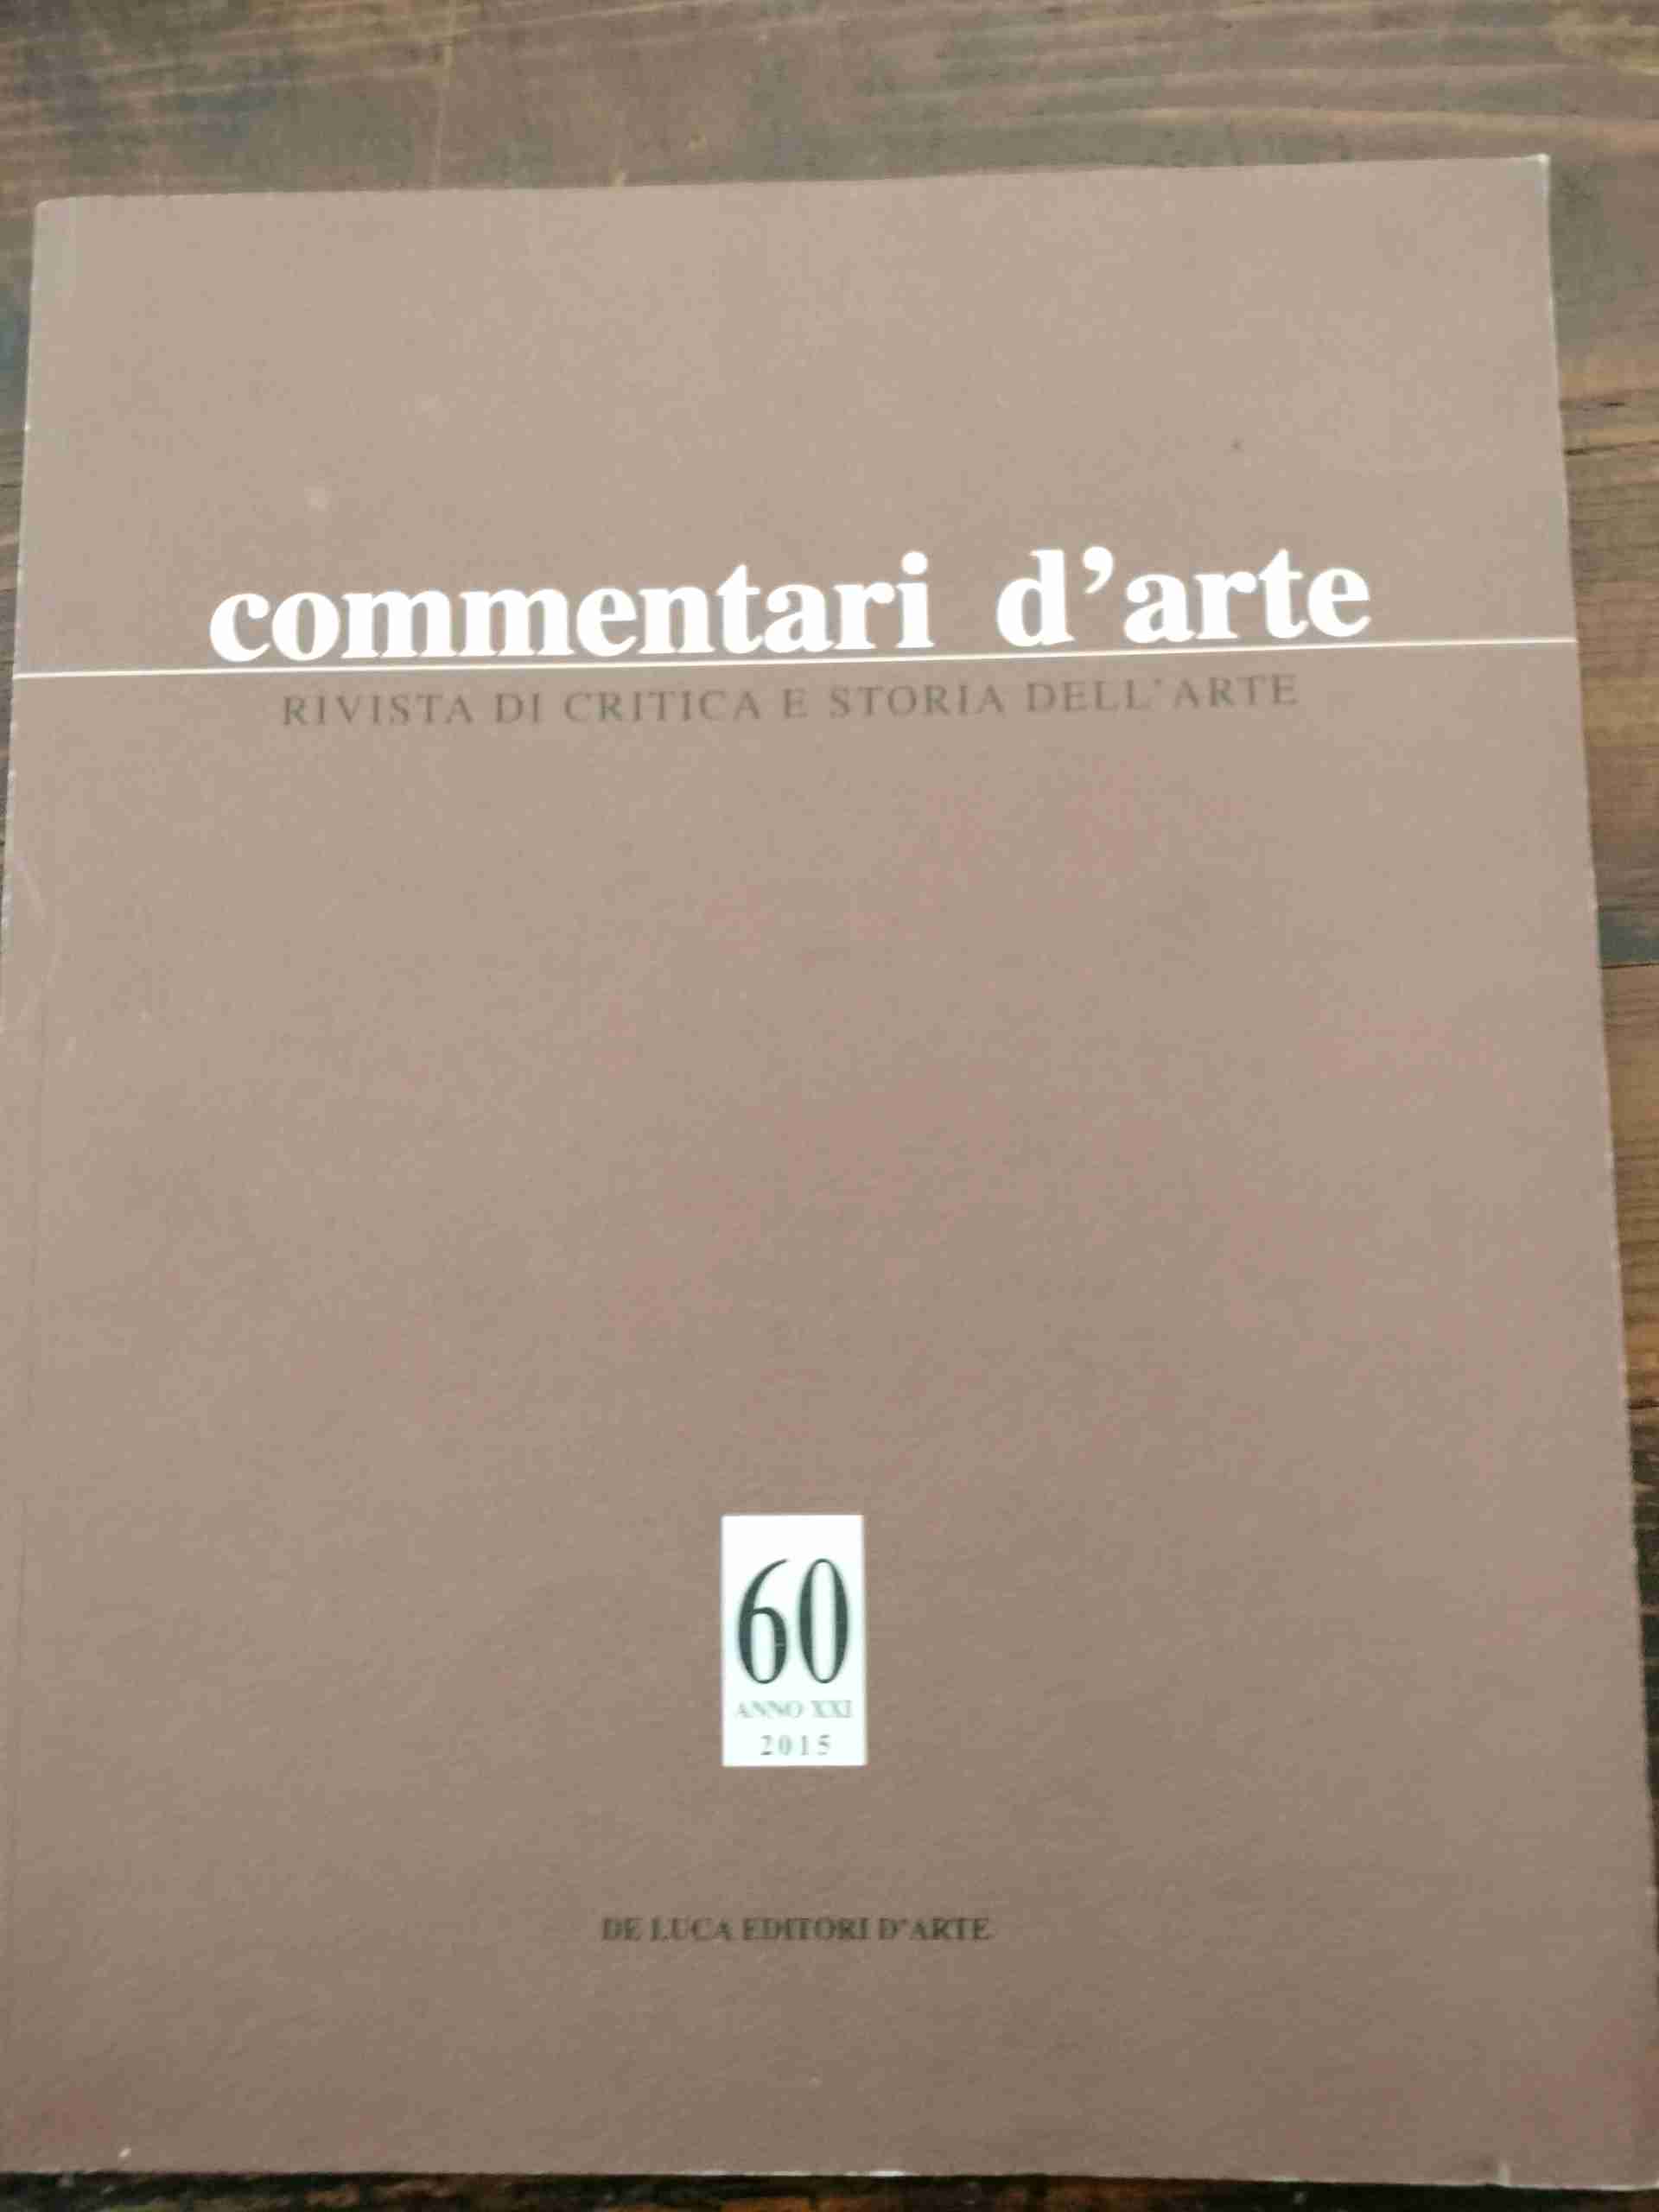 Commentari D'Arte. Rivista Di Critica E Storia Dell'Arte. Anno Xxi. N. 60. Gennaio-Aprile 2015